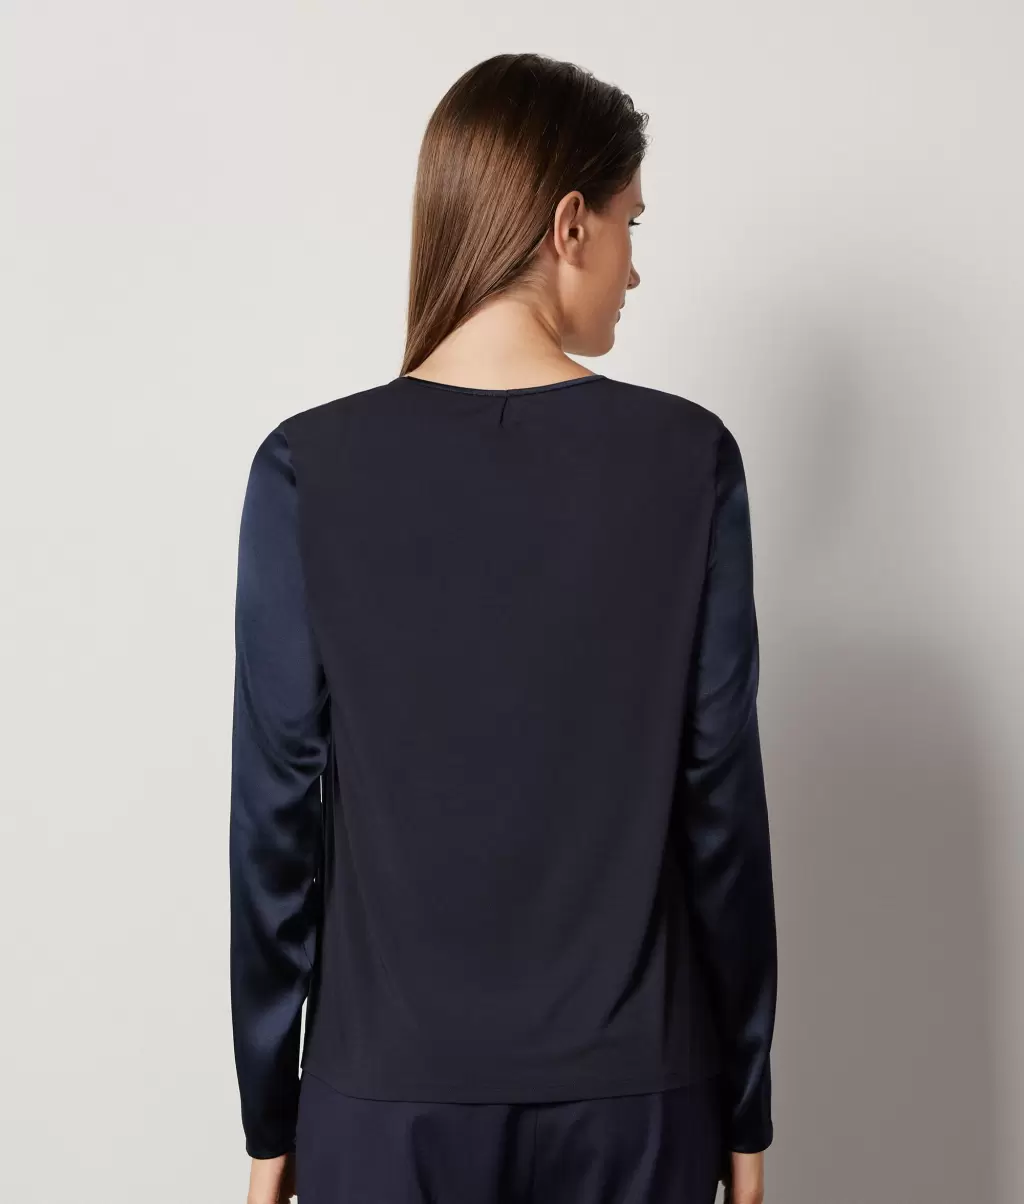 Falconeri Kobieta Koszule I Bluzki Bluzka Z Okrągłym Dekoltem Z Satyny Jedwabnej Blue - 2